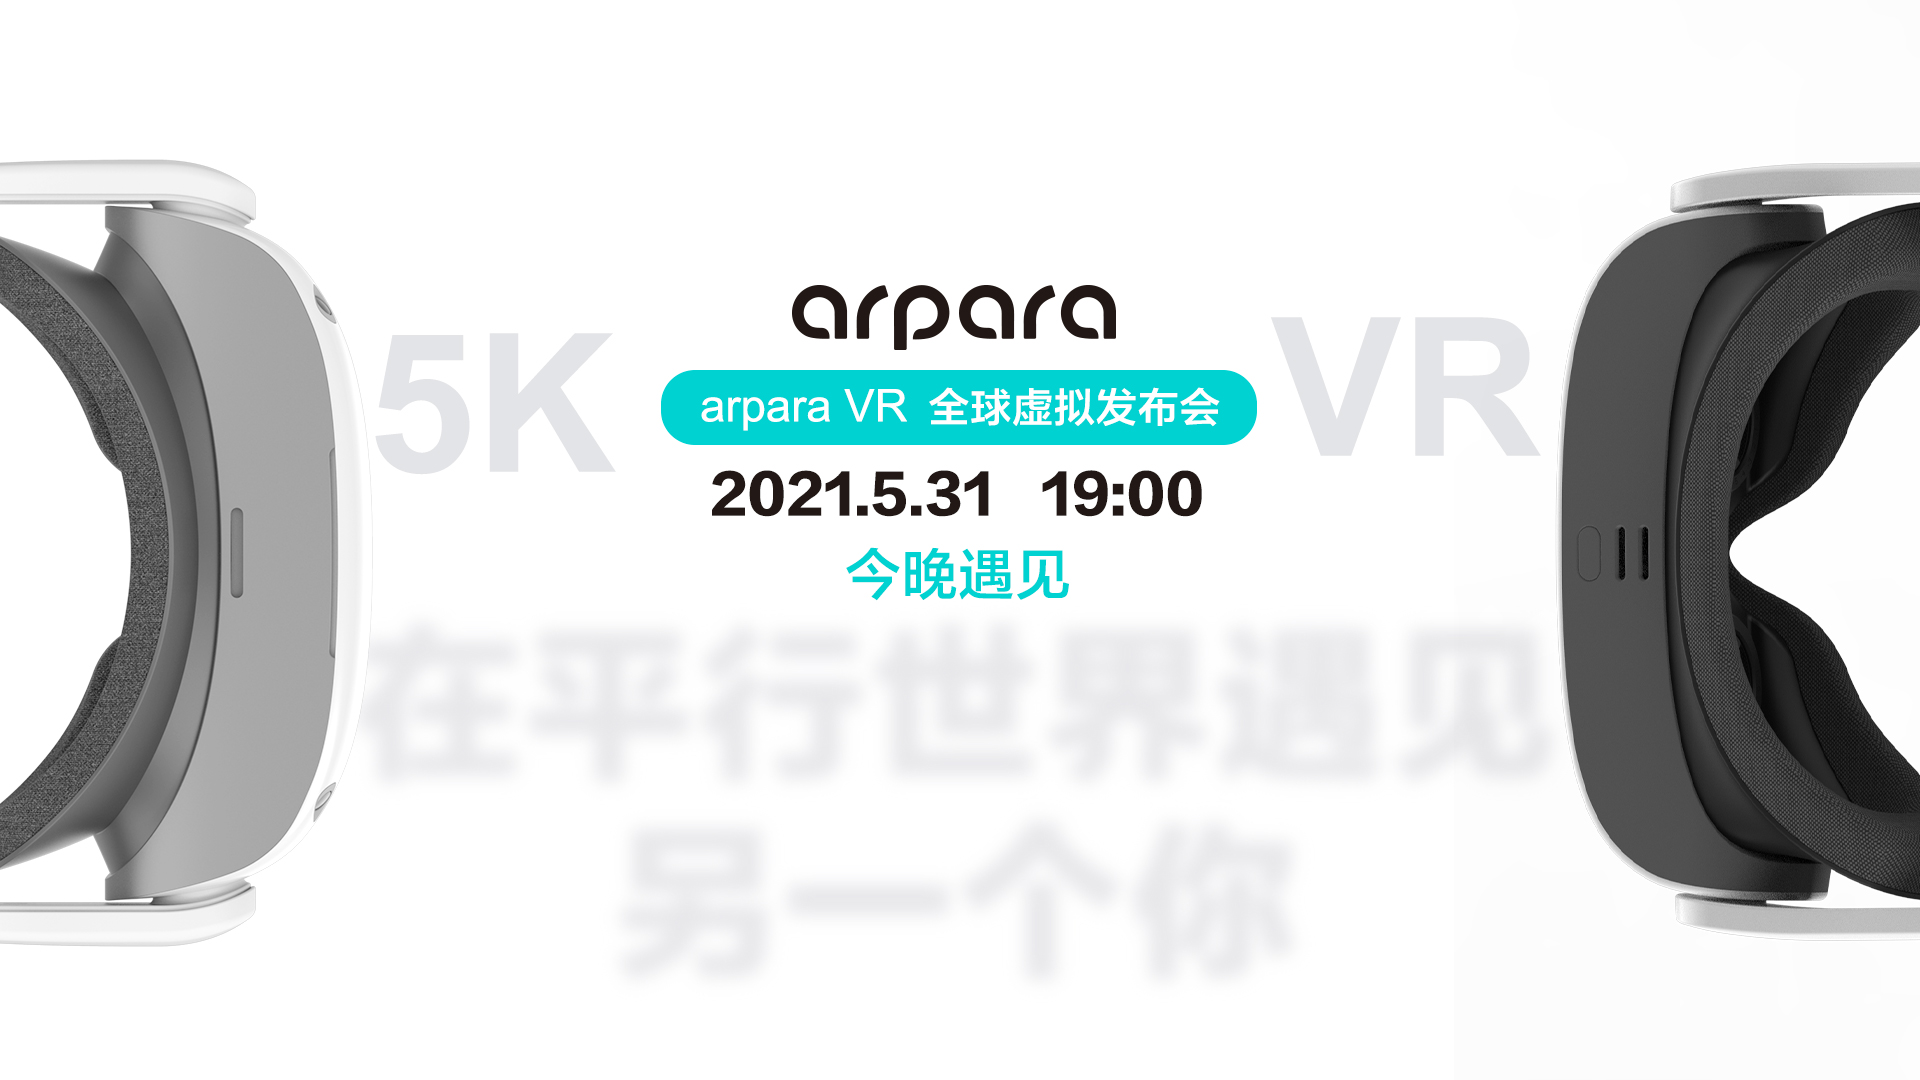 arpara VR 5K头显及一体机全球首发 售价3999元起